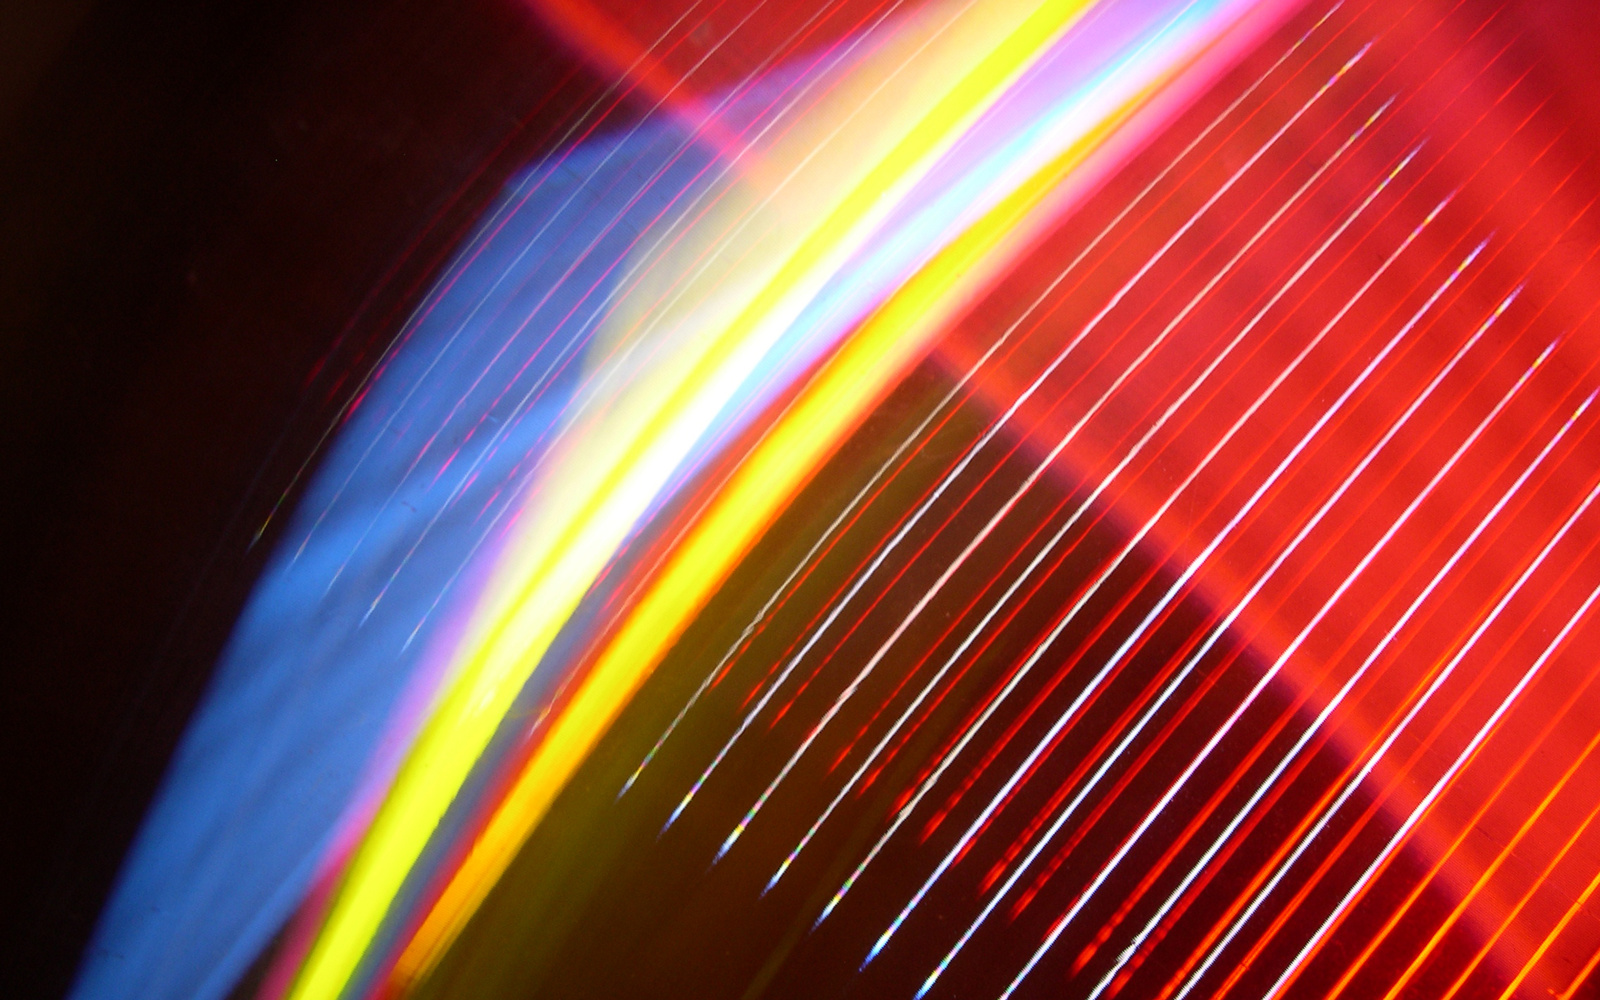 Das Bild zeigt eine vierfarbige Lichtinstallation